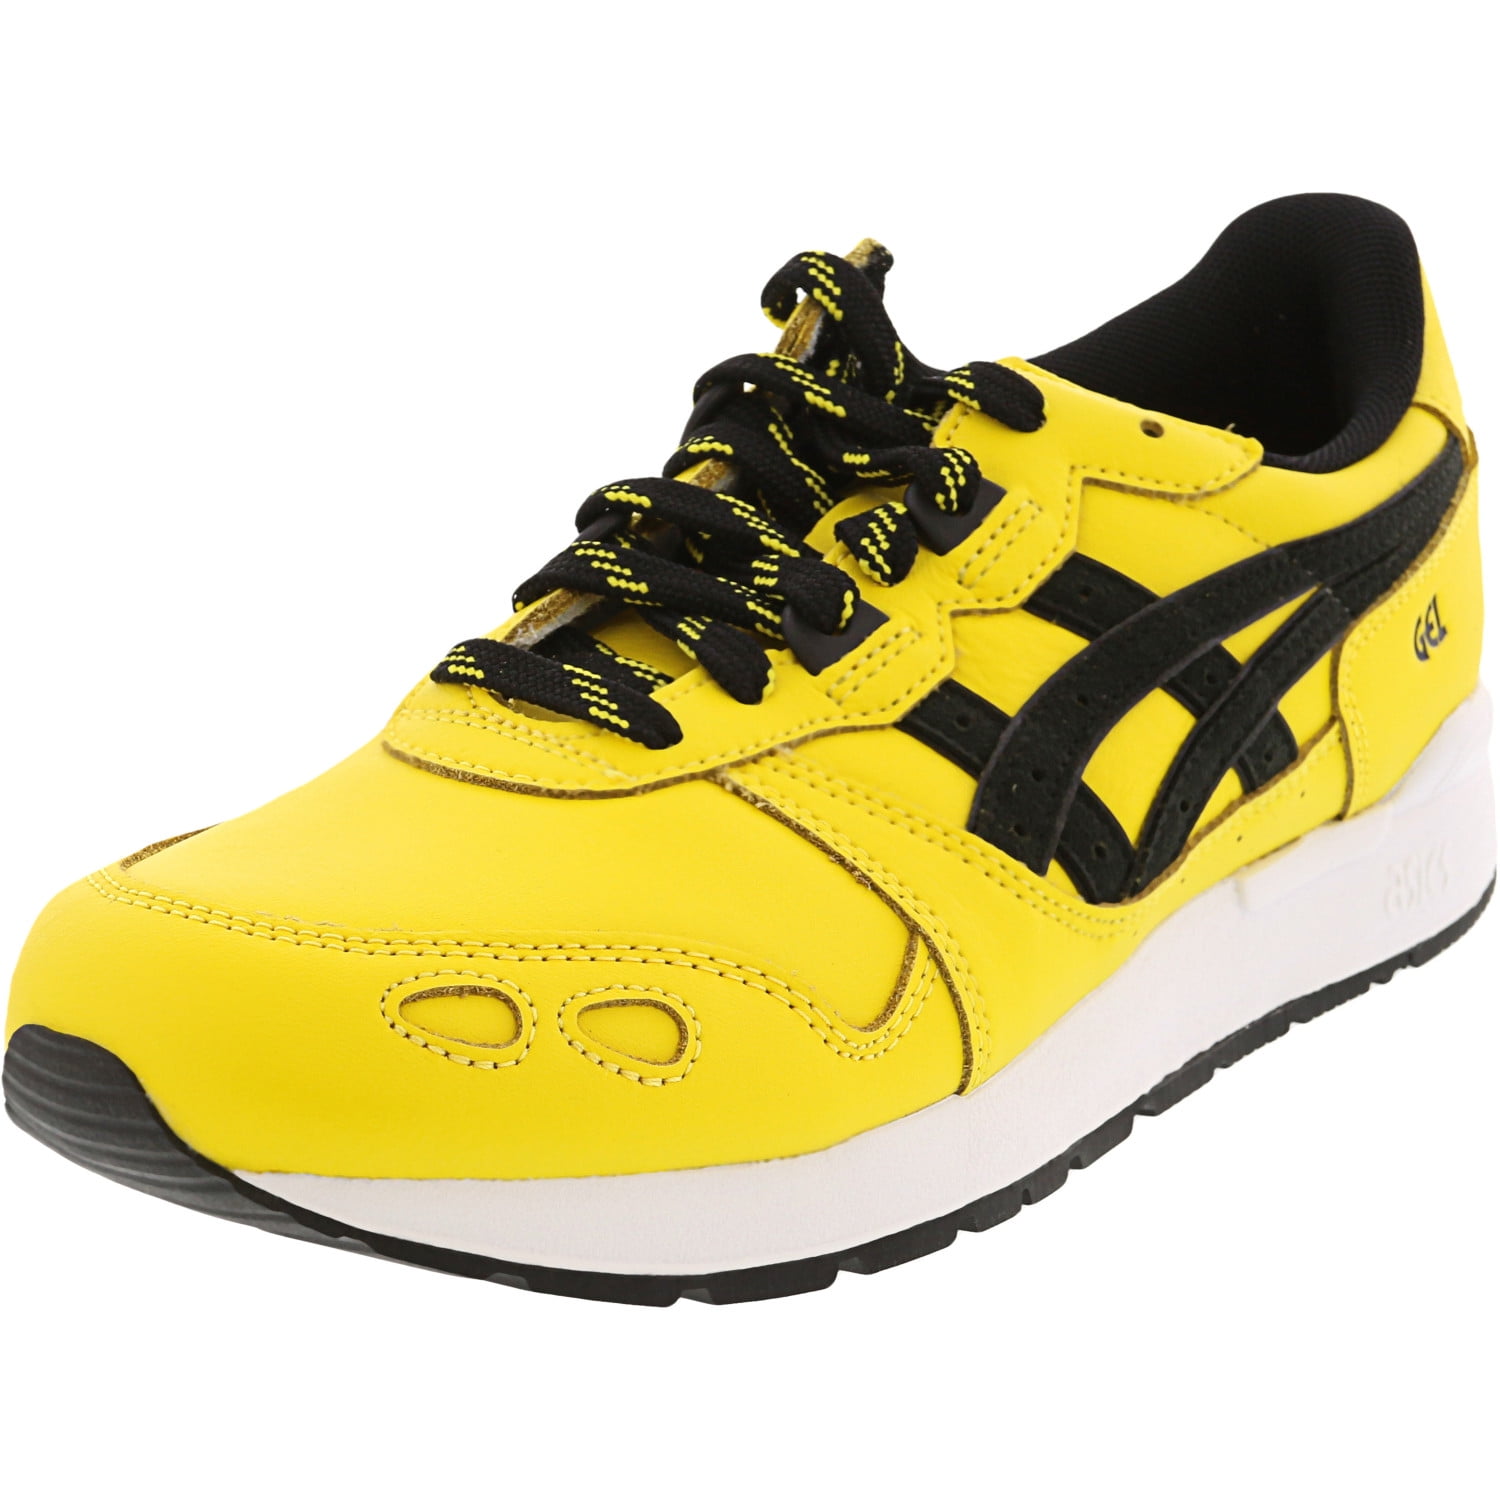 ASICS - Asics Men's Gel-Lyte Fashion Sneaker - 9.5M - Tai-Chi Yellow ...